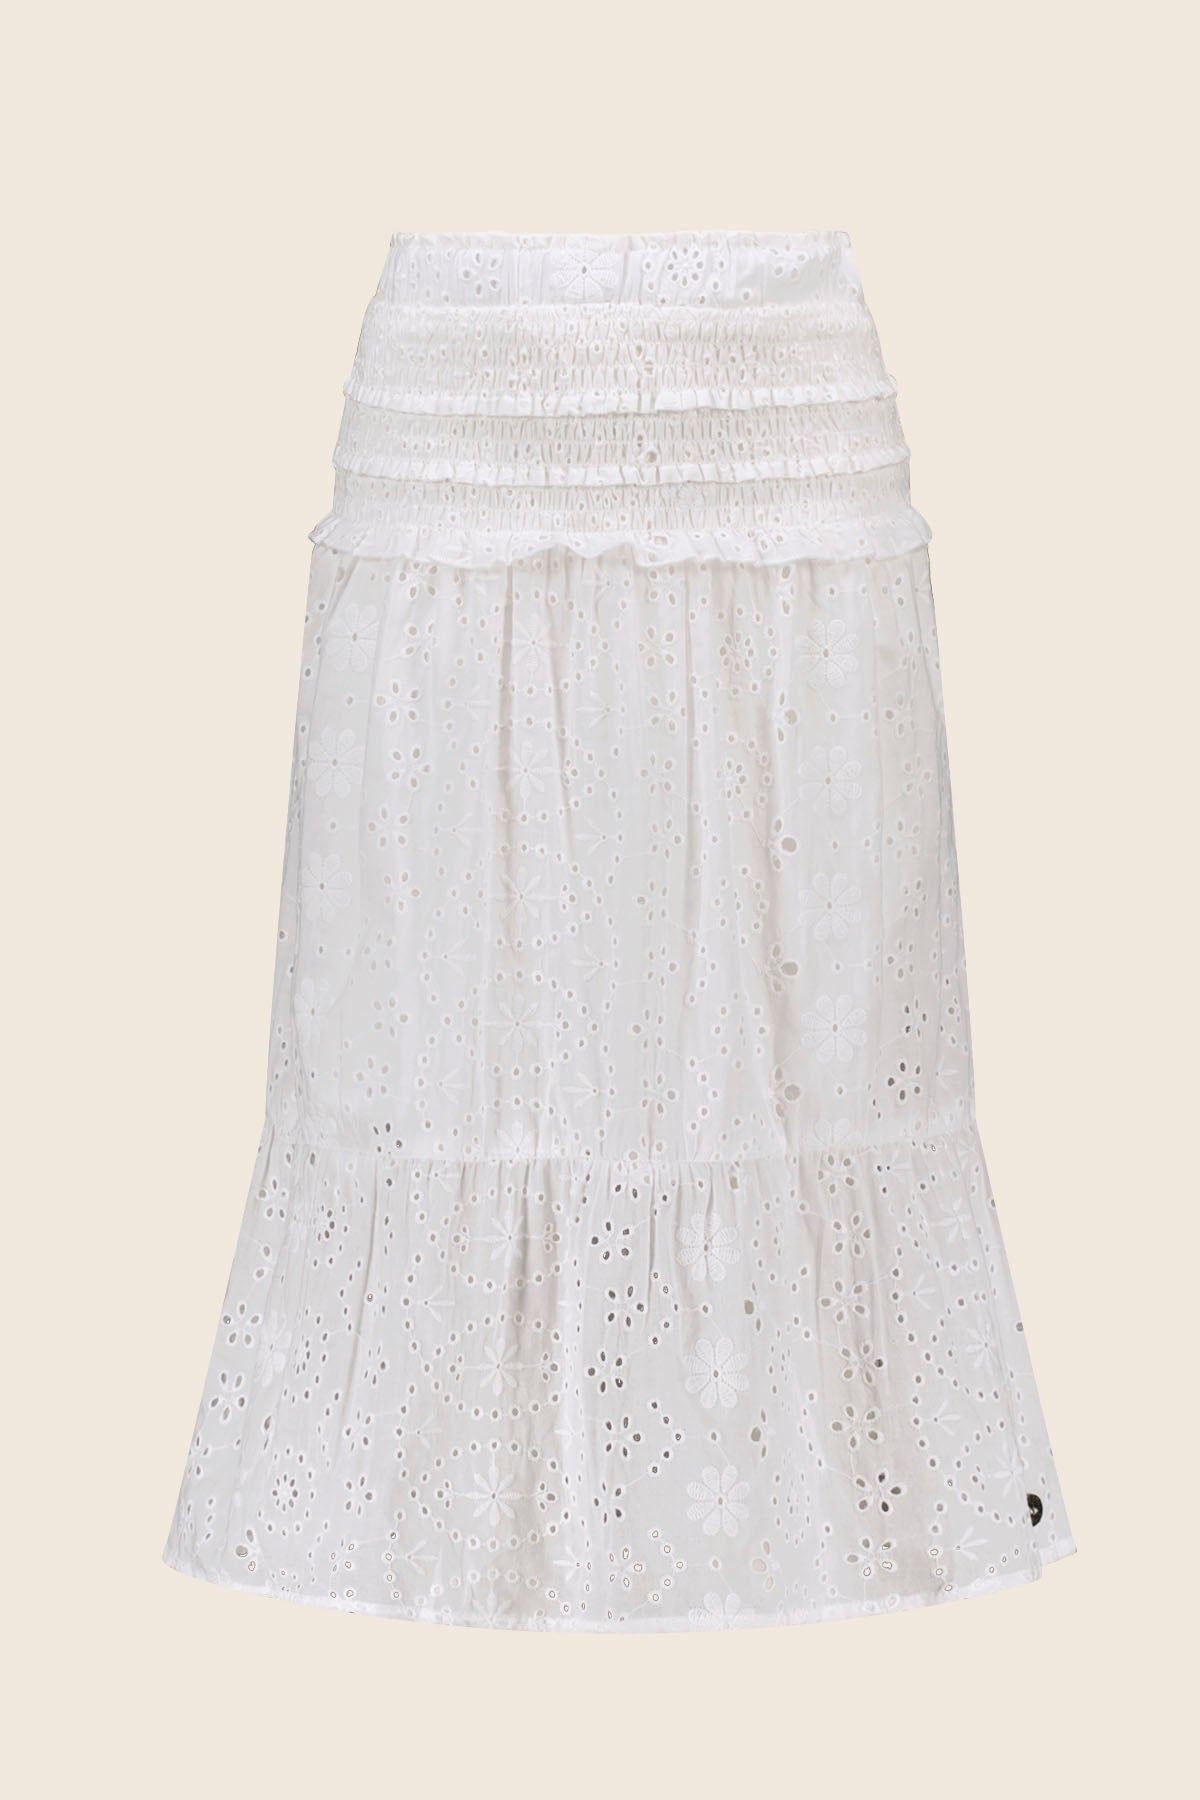 Rok Skirt VALENTHE off white